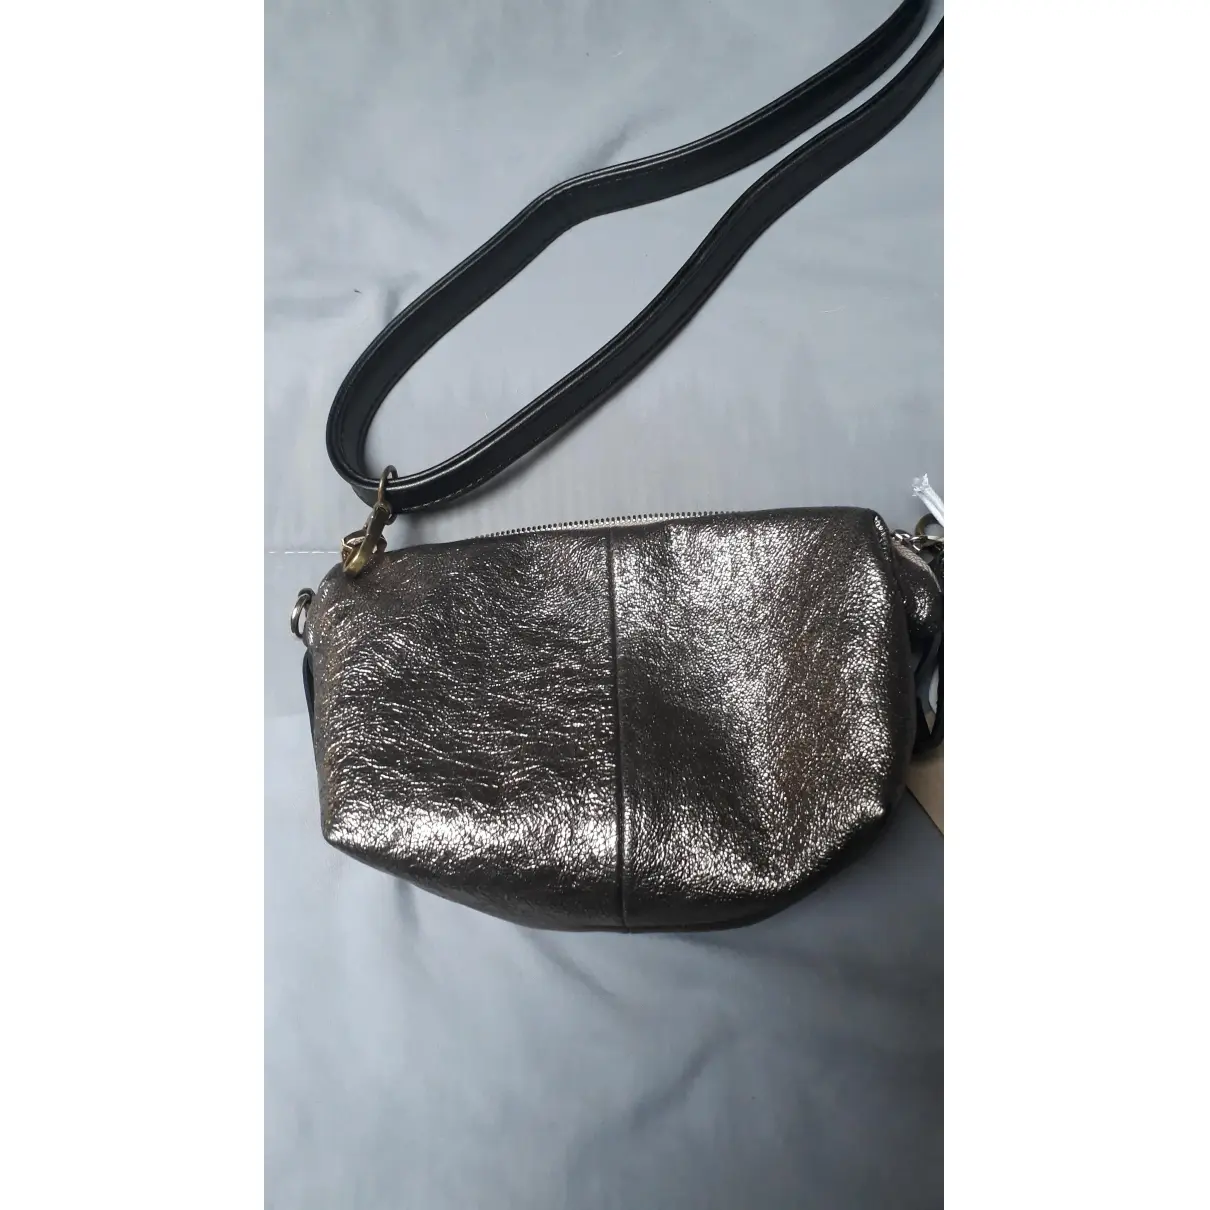 Buy Craie Leather handbag online